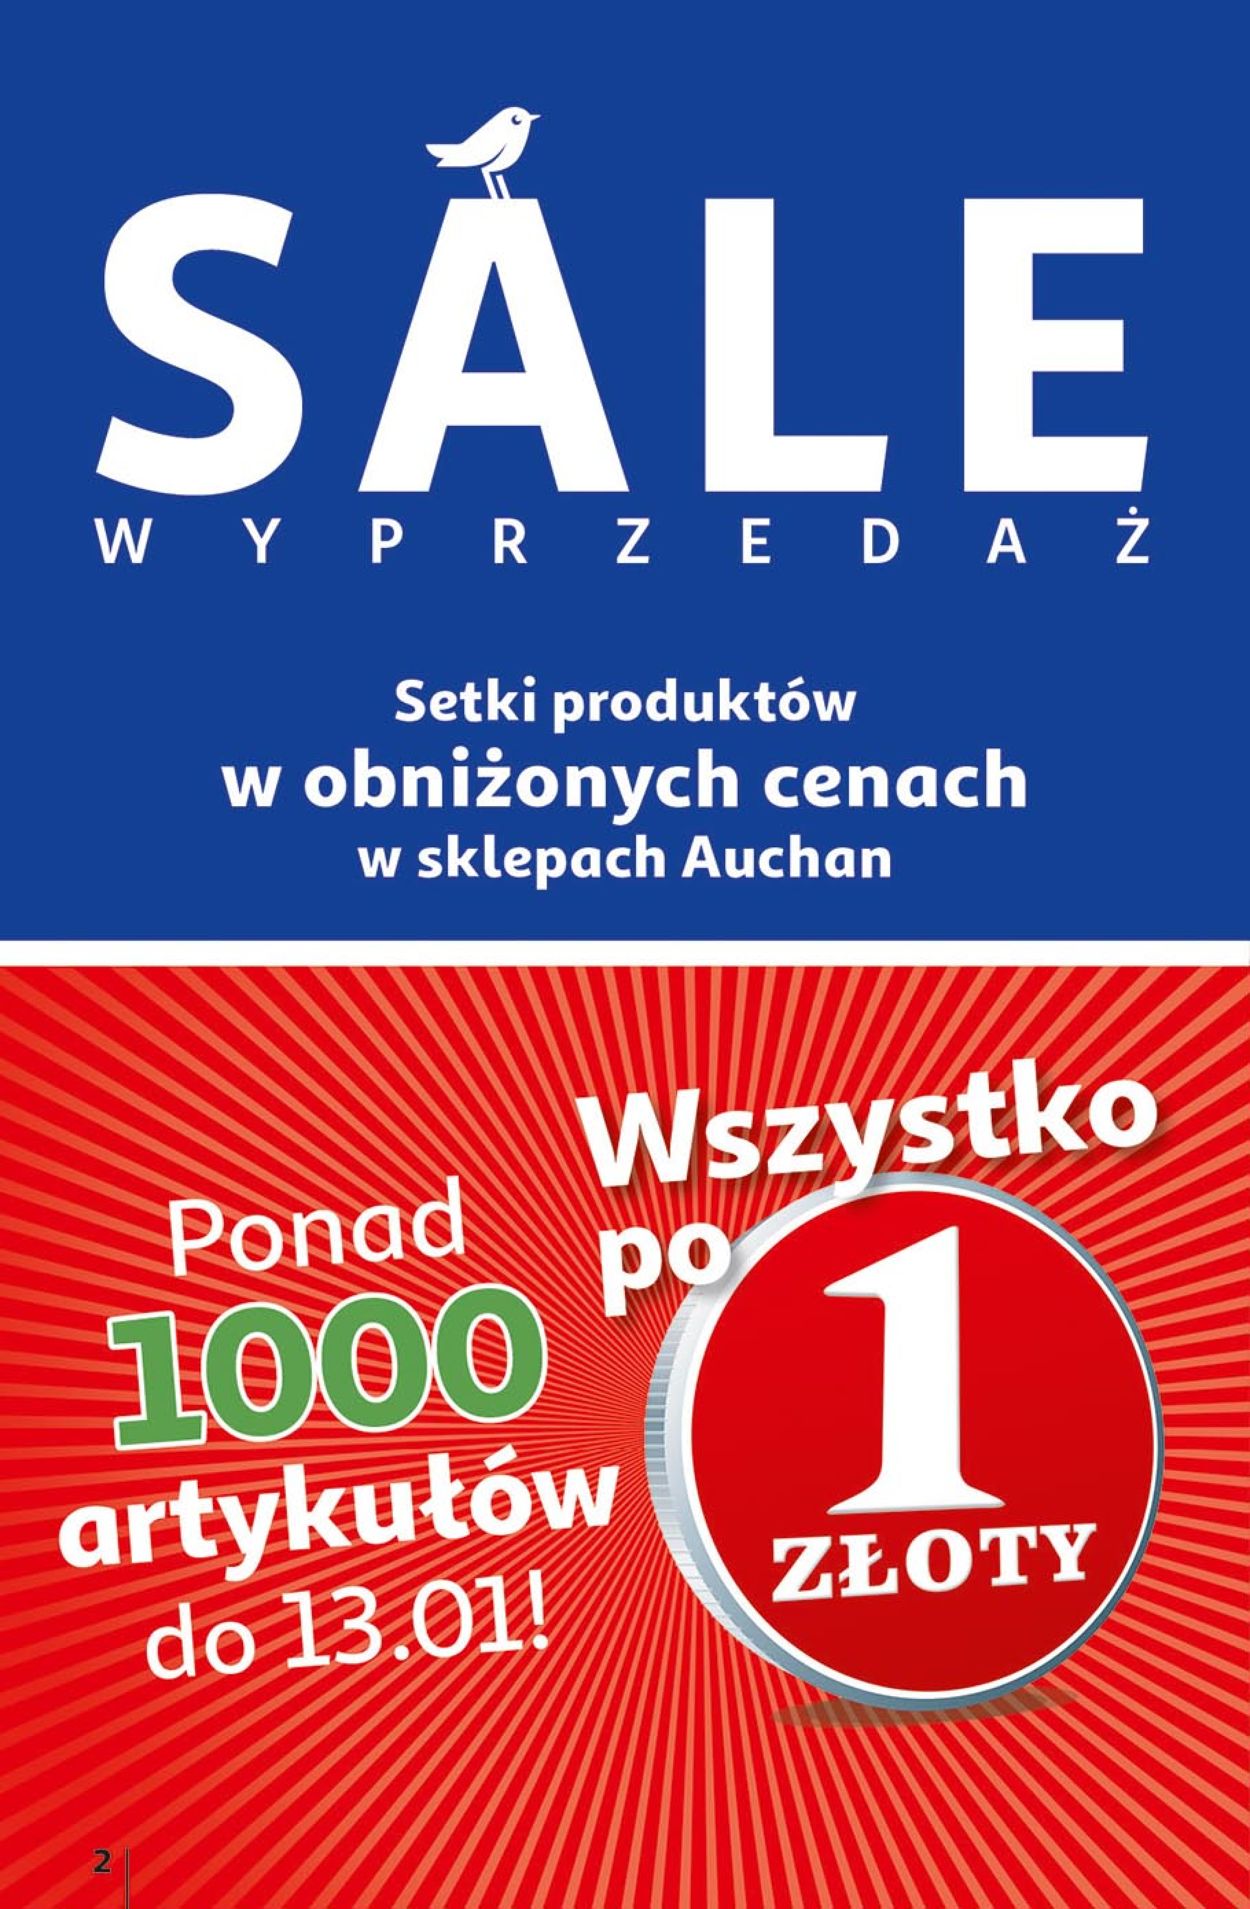 Auchan Gazetka od 10.01.2020